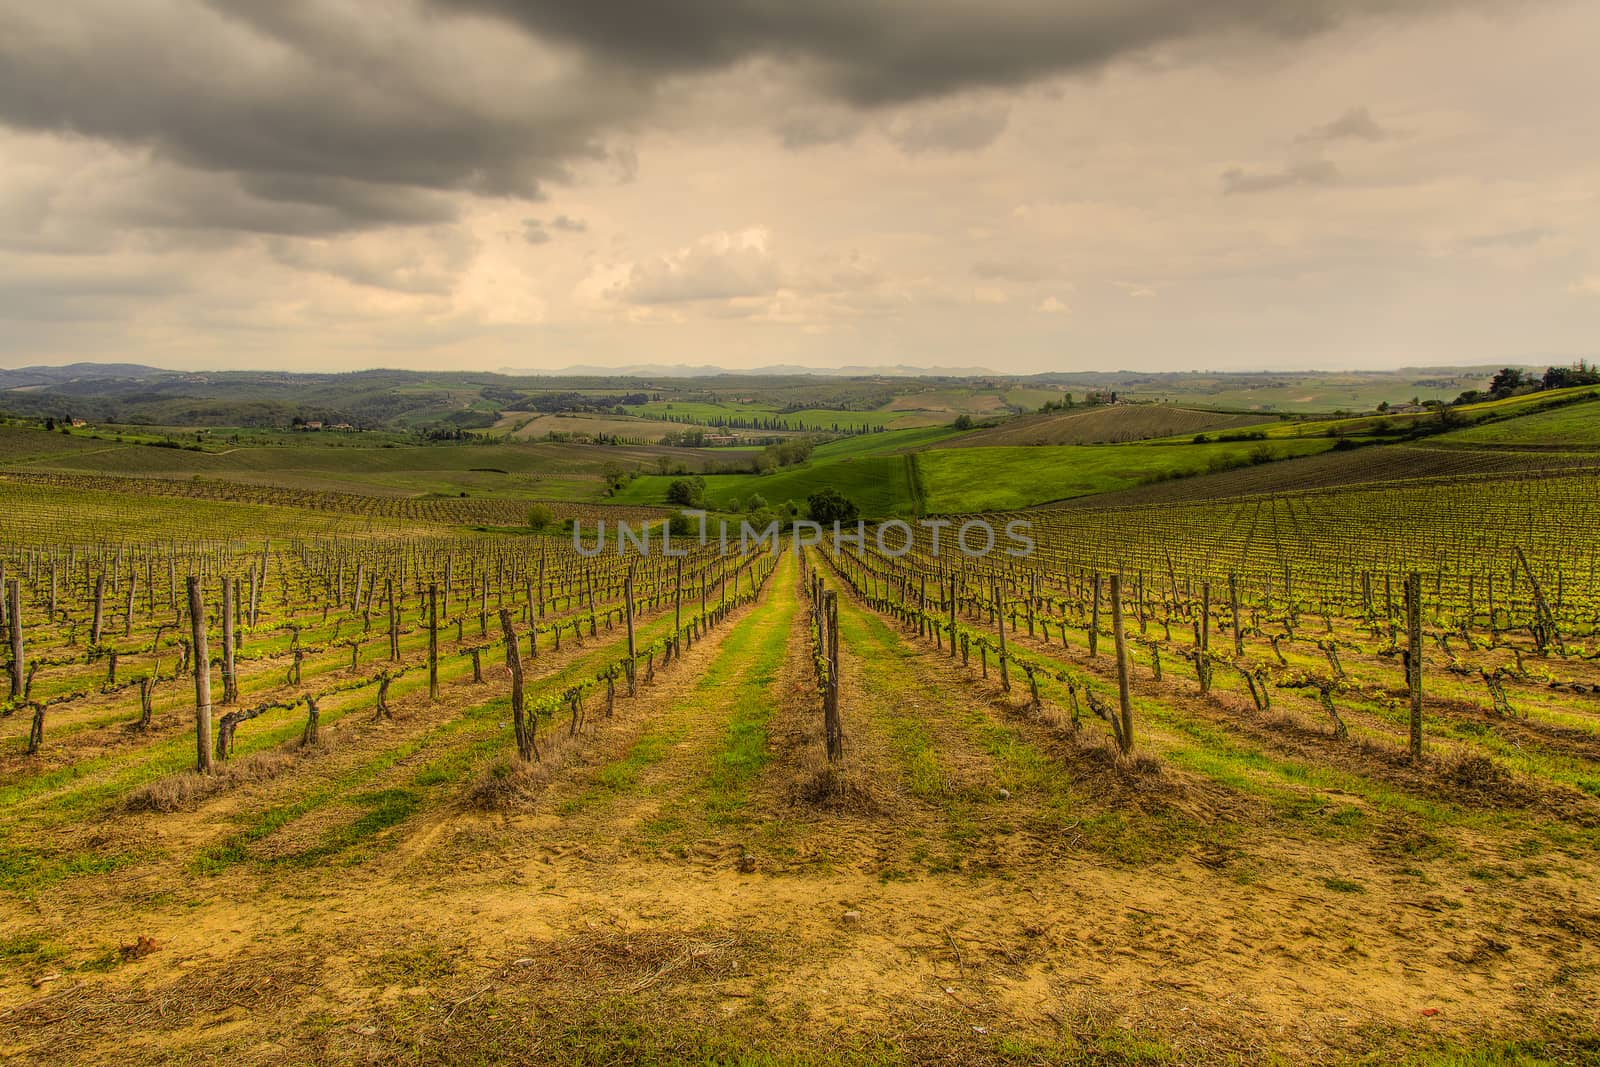 The Tuscan vineyards by nicobernieri